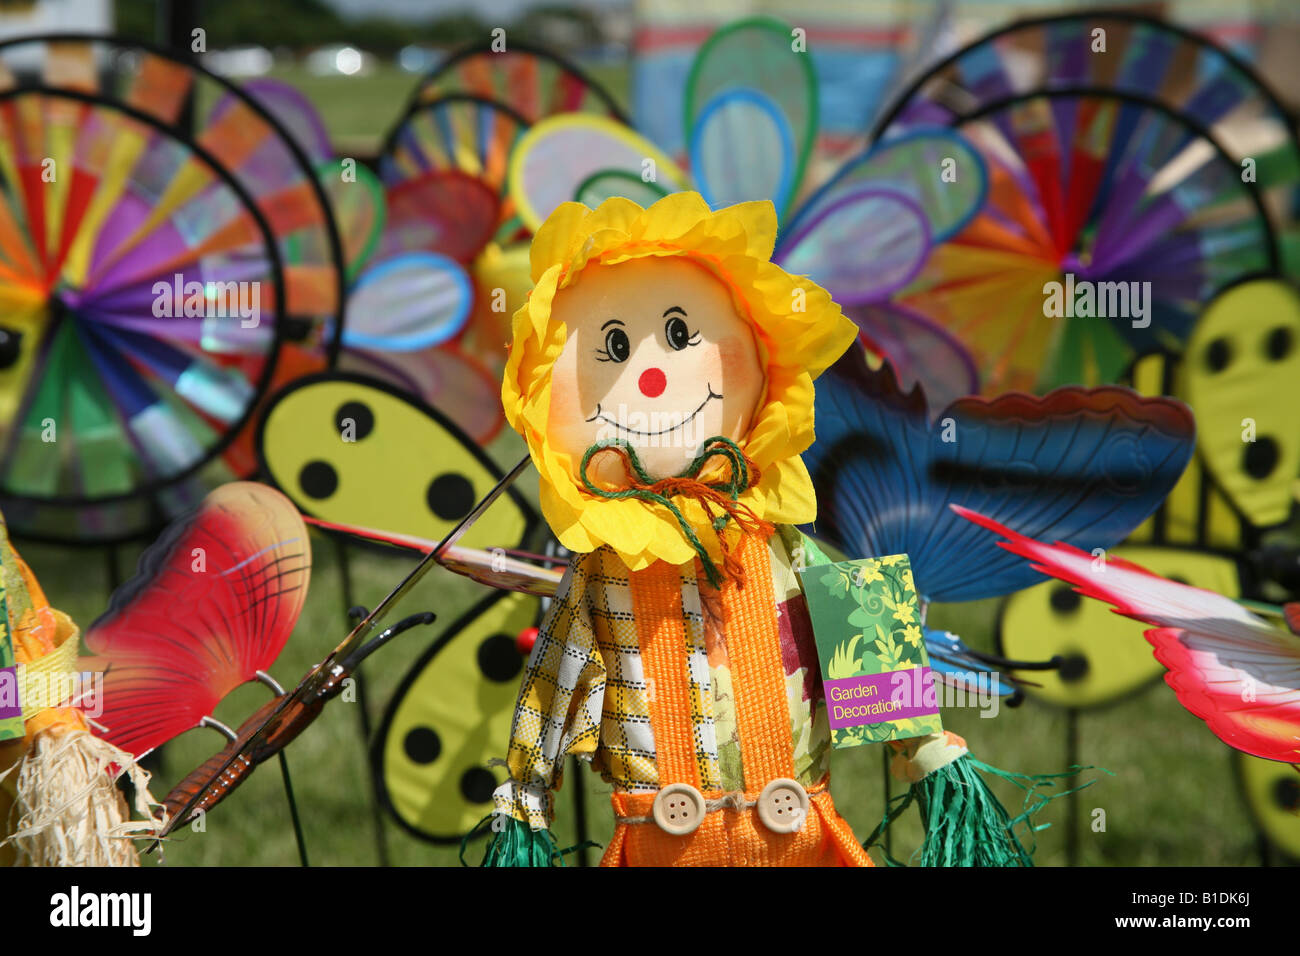 Una muñeca y las paletas de viento en el festival de cometas de Blackheath Lewisham London Foto de stock